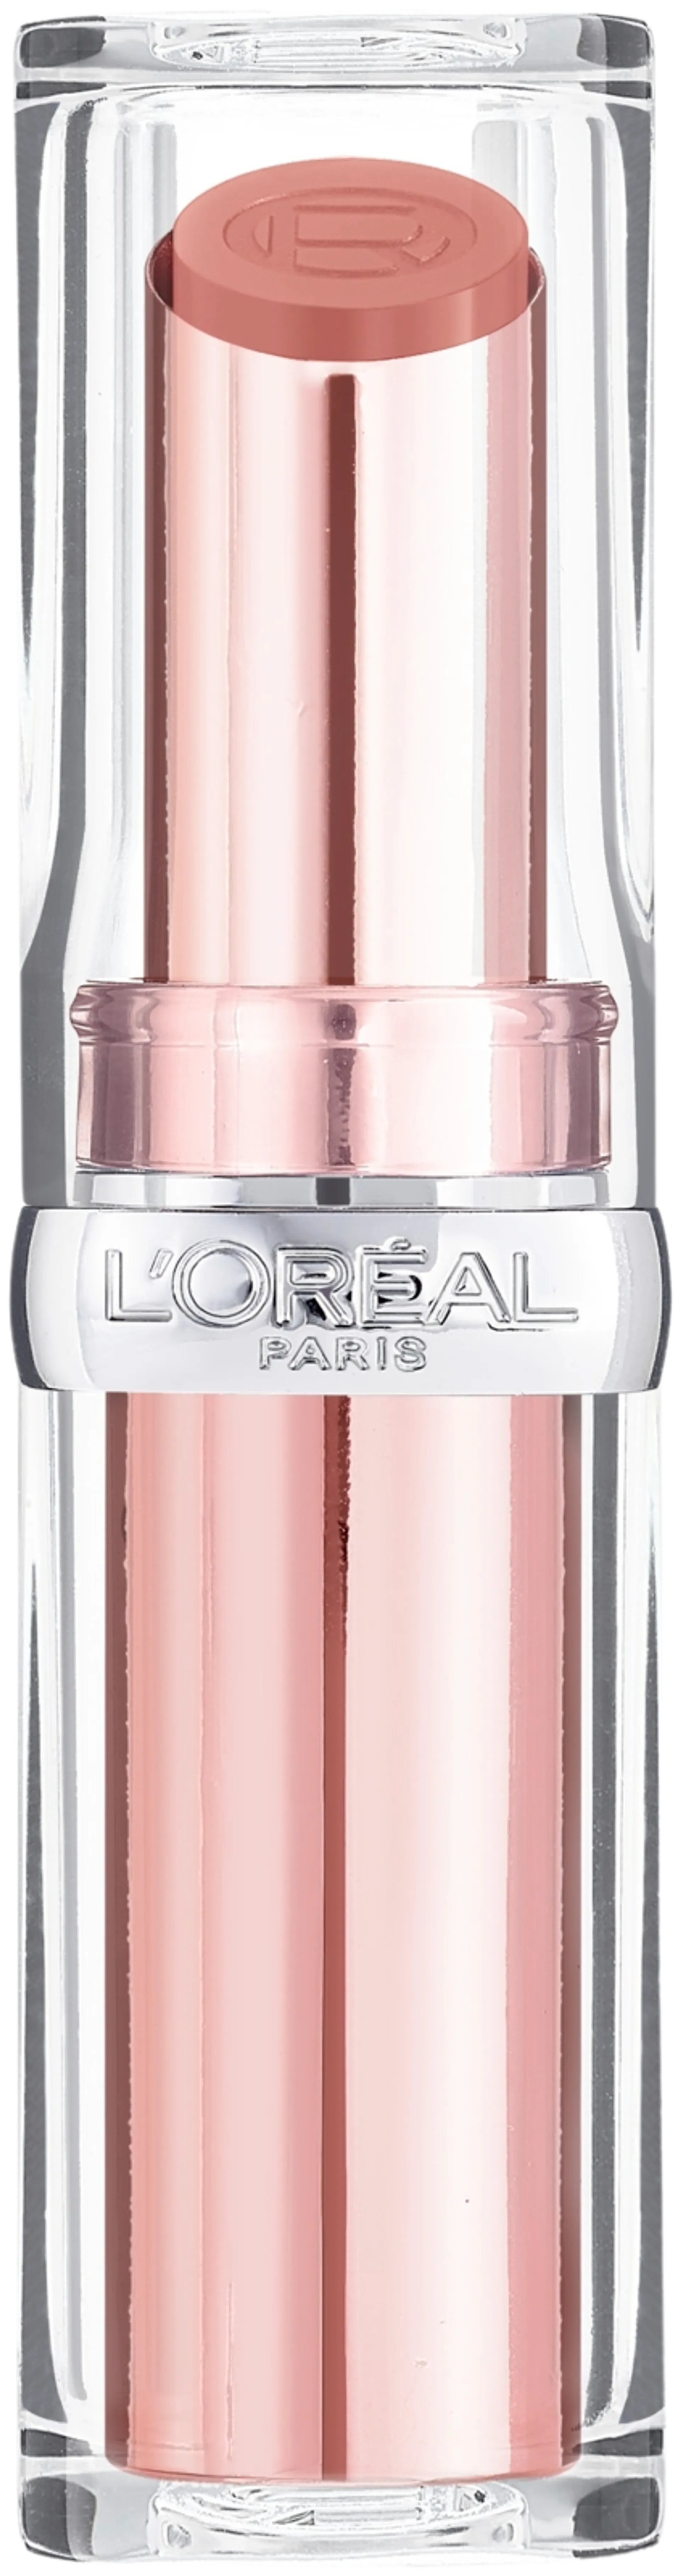 L'Oréal Paris L'Oréal Paris Glow Paradise Balm-in-Lipstick 642 Beige Eden huulipuna 4,8g - 2